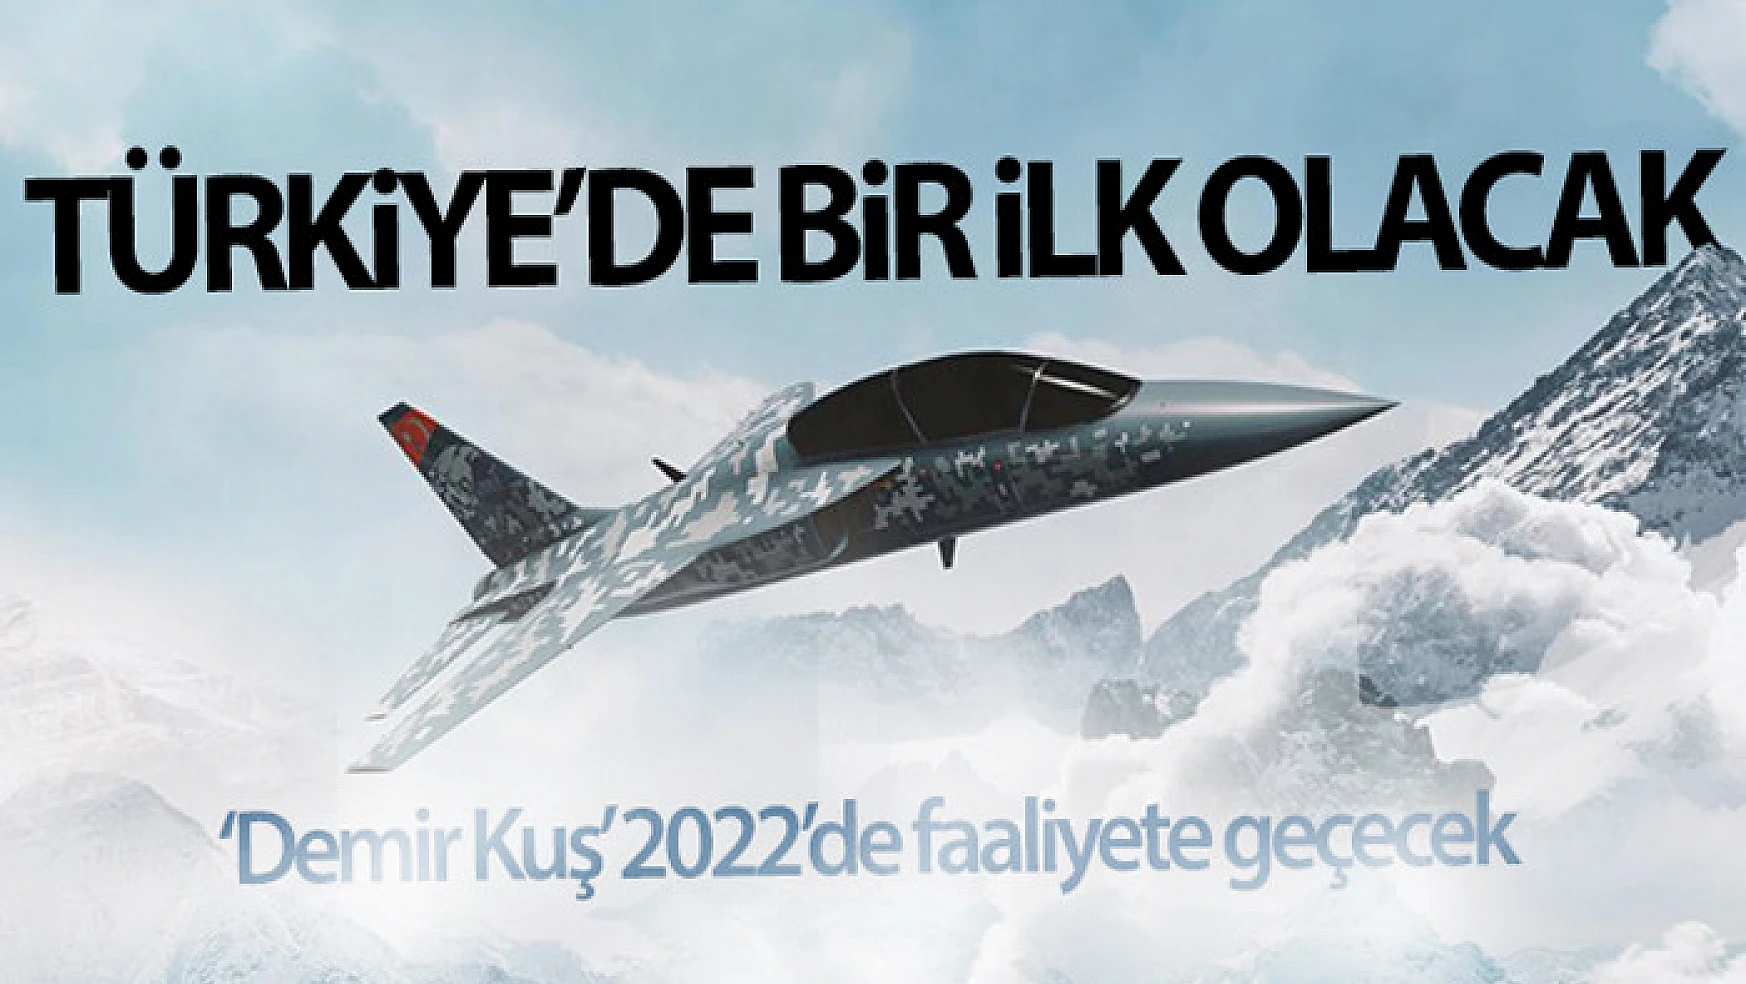 Türk Havacılık ve Uzay Sanayii'nin kuracağı tesis Türkiye'de bir ilk olacak